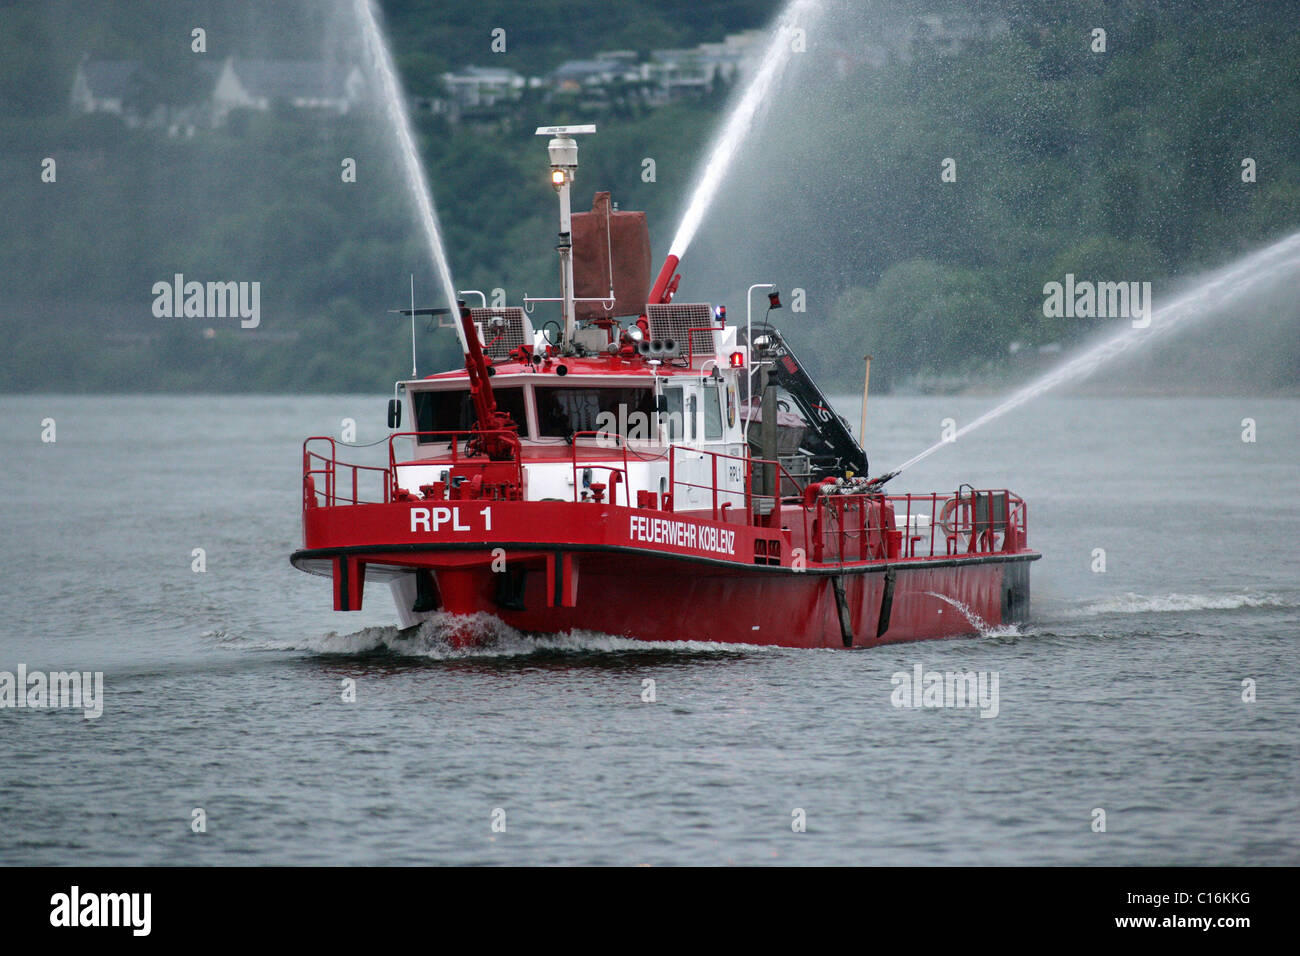 Fire barco 'RLP-1' durante un ejercicio de rescate en el río Mosel, cerca de Coblenza, Renania-Palatinado, Alemania, Europa Foto de stock